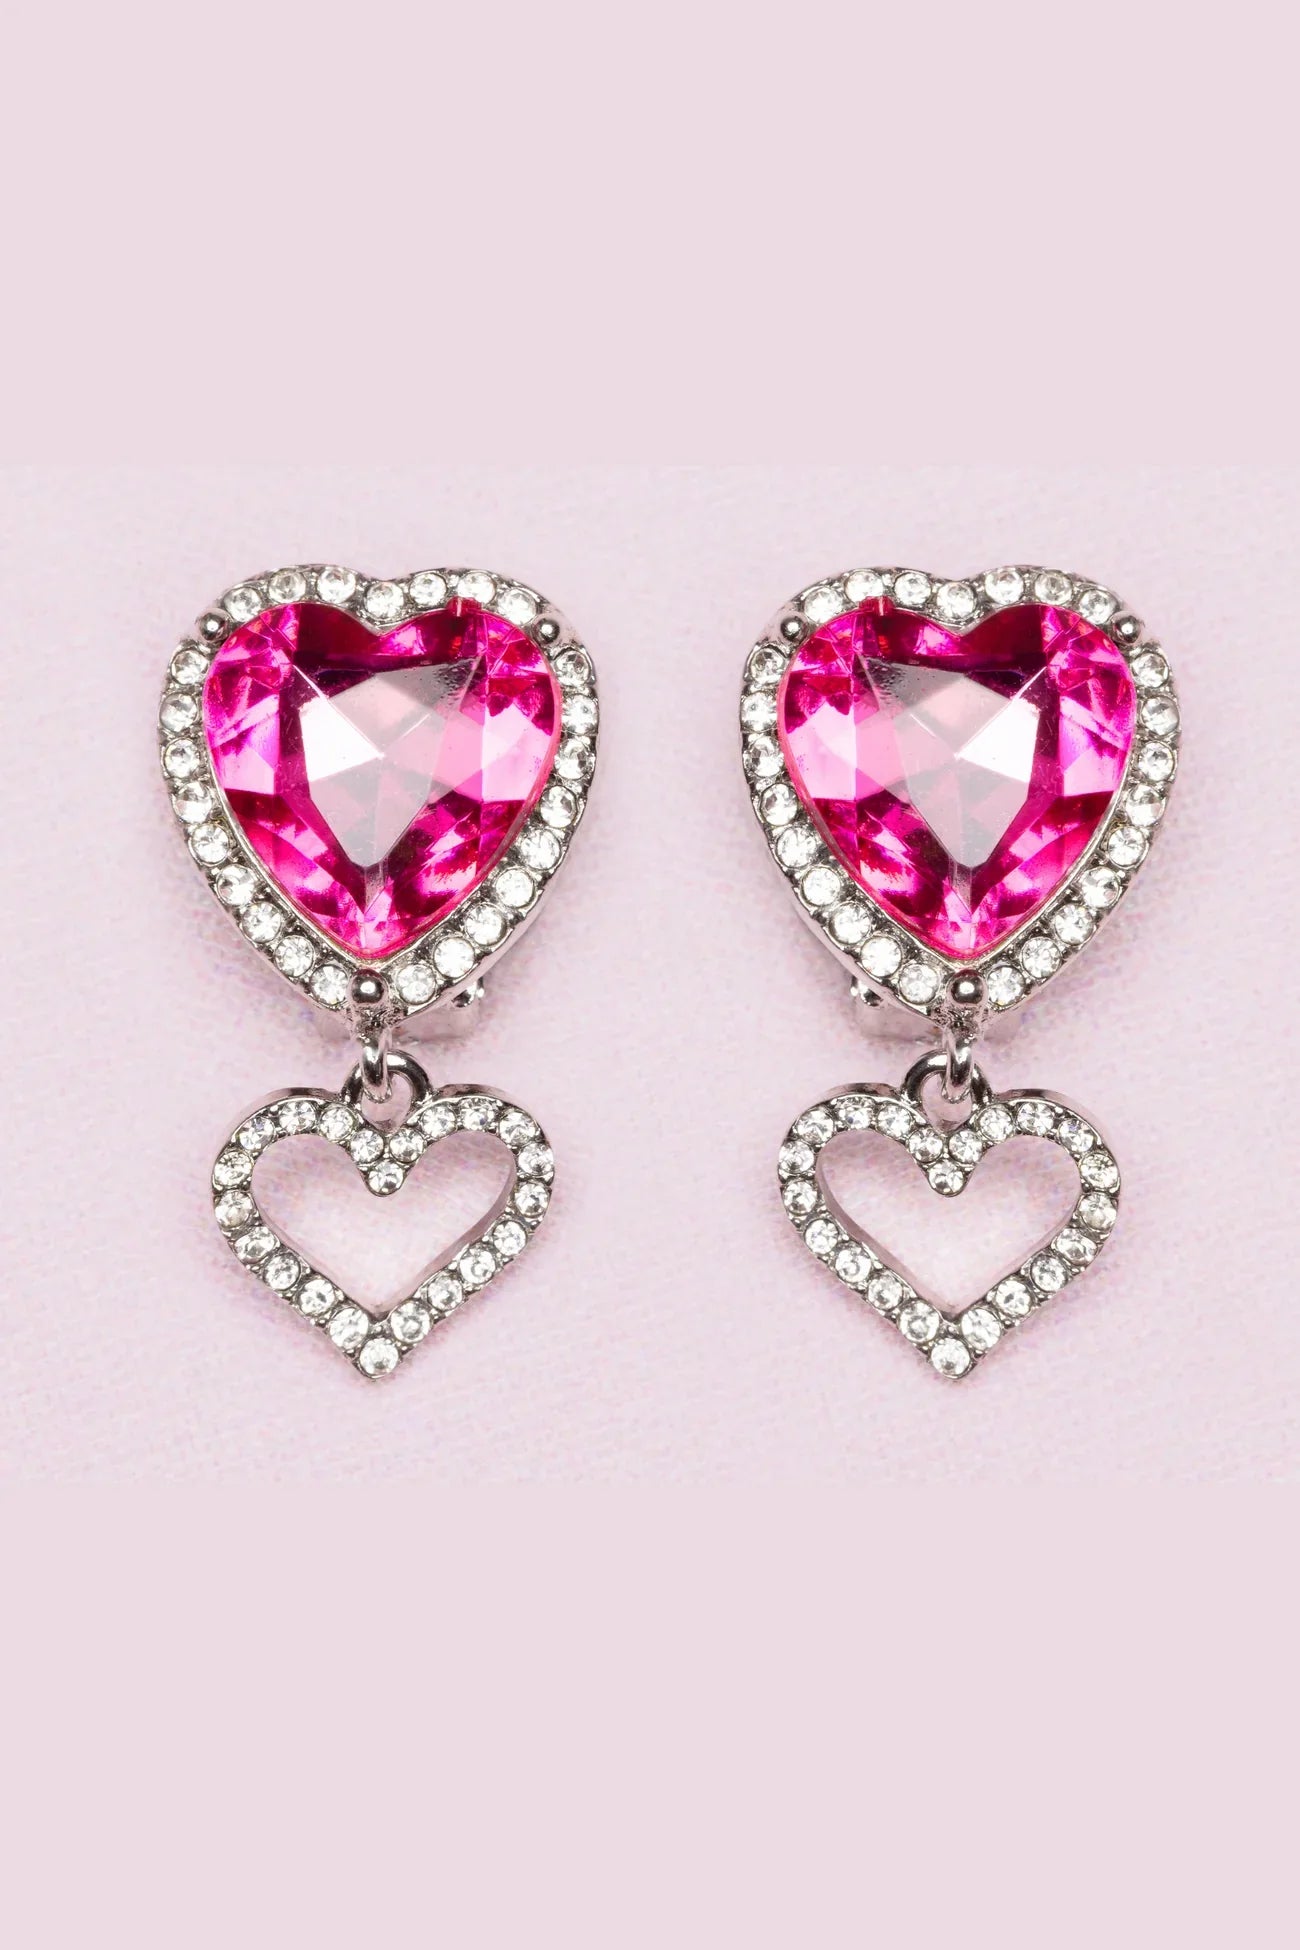 Heart Jewel Clip On Earrings